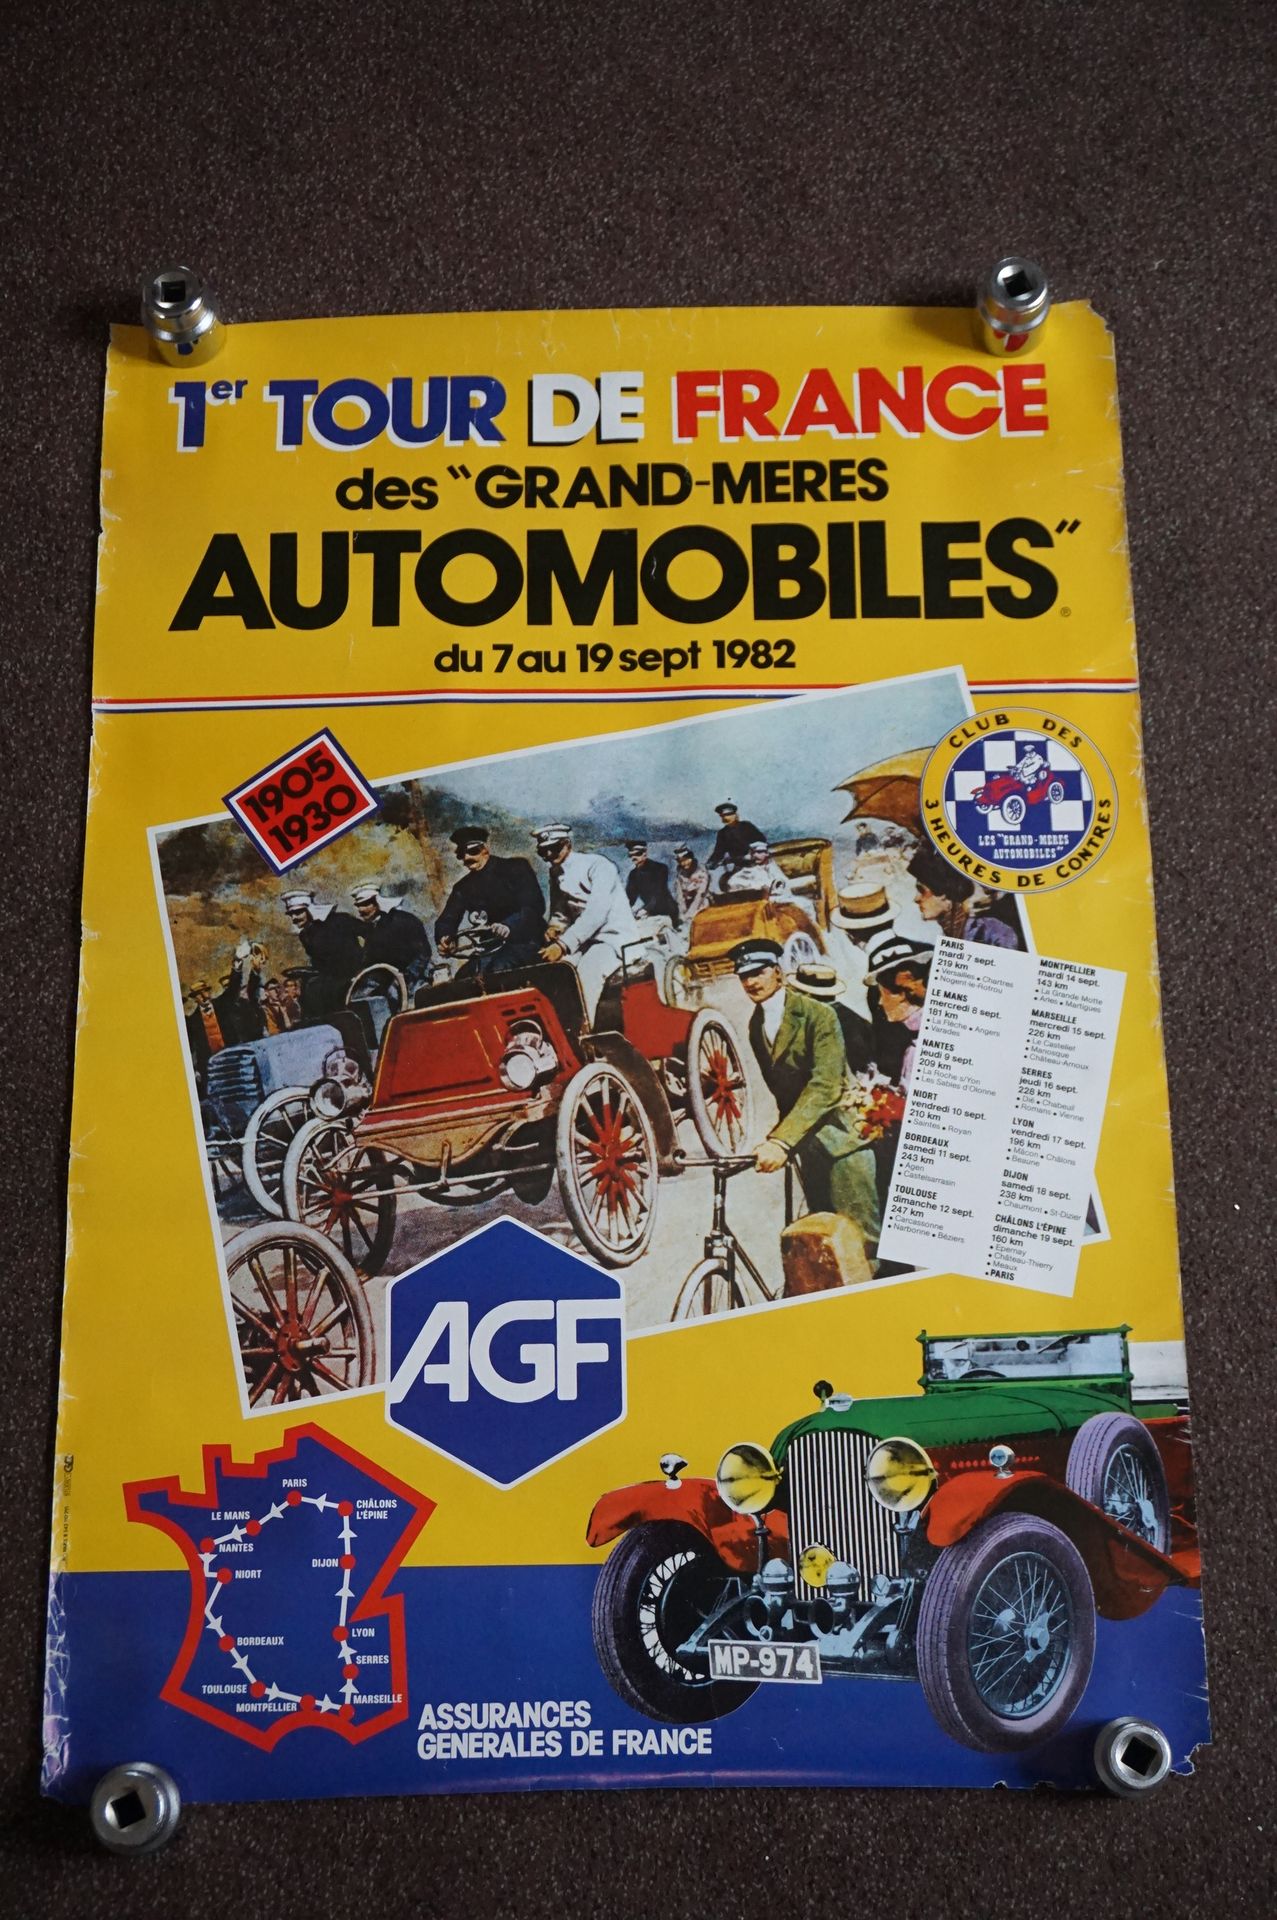 Null Poster of the "1st Tour de France des Grand Mères 
Automobiles".